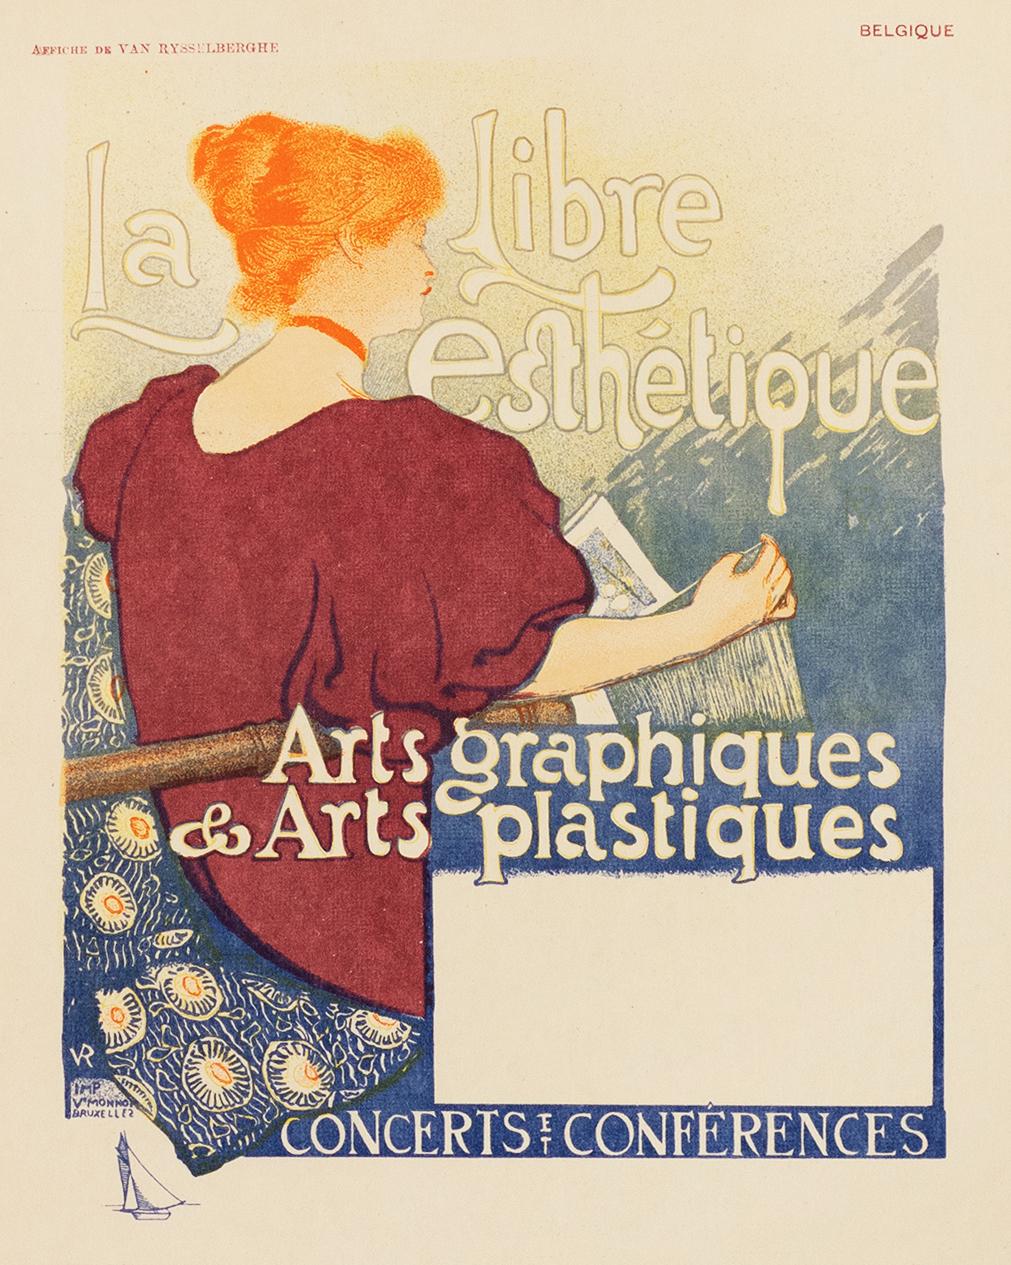 La Libre Esthetique by Théo van Rysselberghe, Art Nouveau Japon lithograph, 1897 - Print by Theo van Rysselberghe